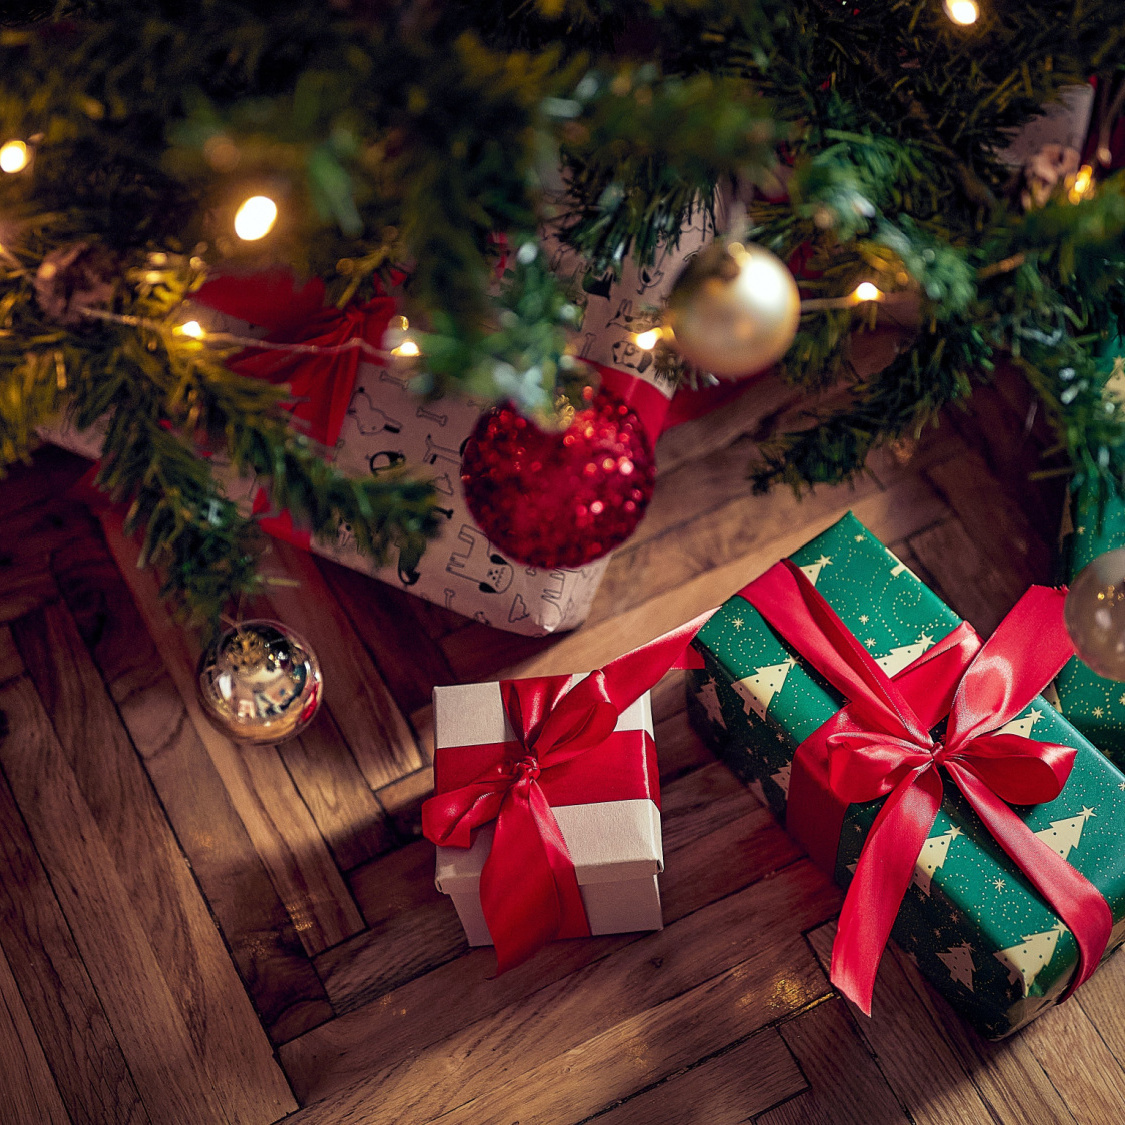 Pour Noël, notre liste d'idées de cadeaux originaux du Nord - Pas